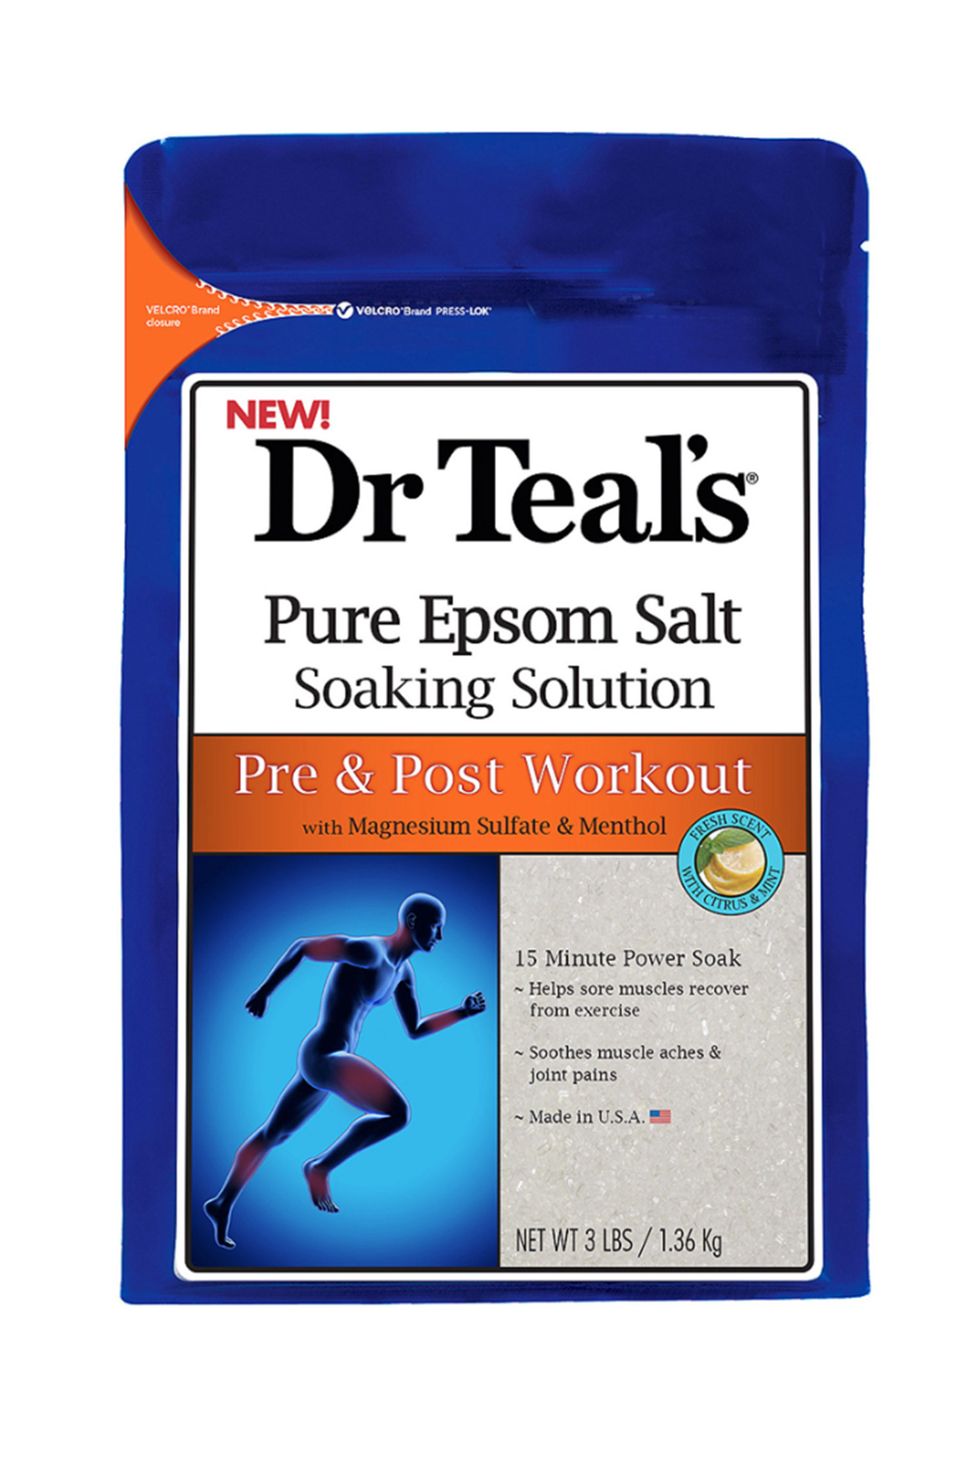 Dr Teal's Epsom salts